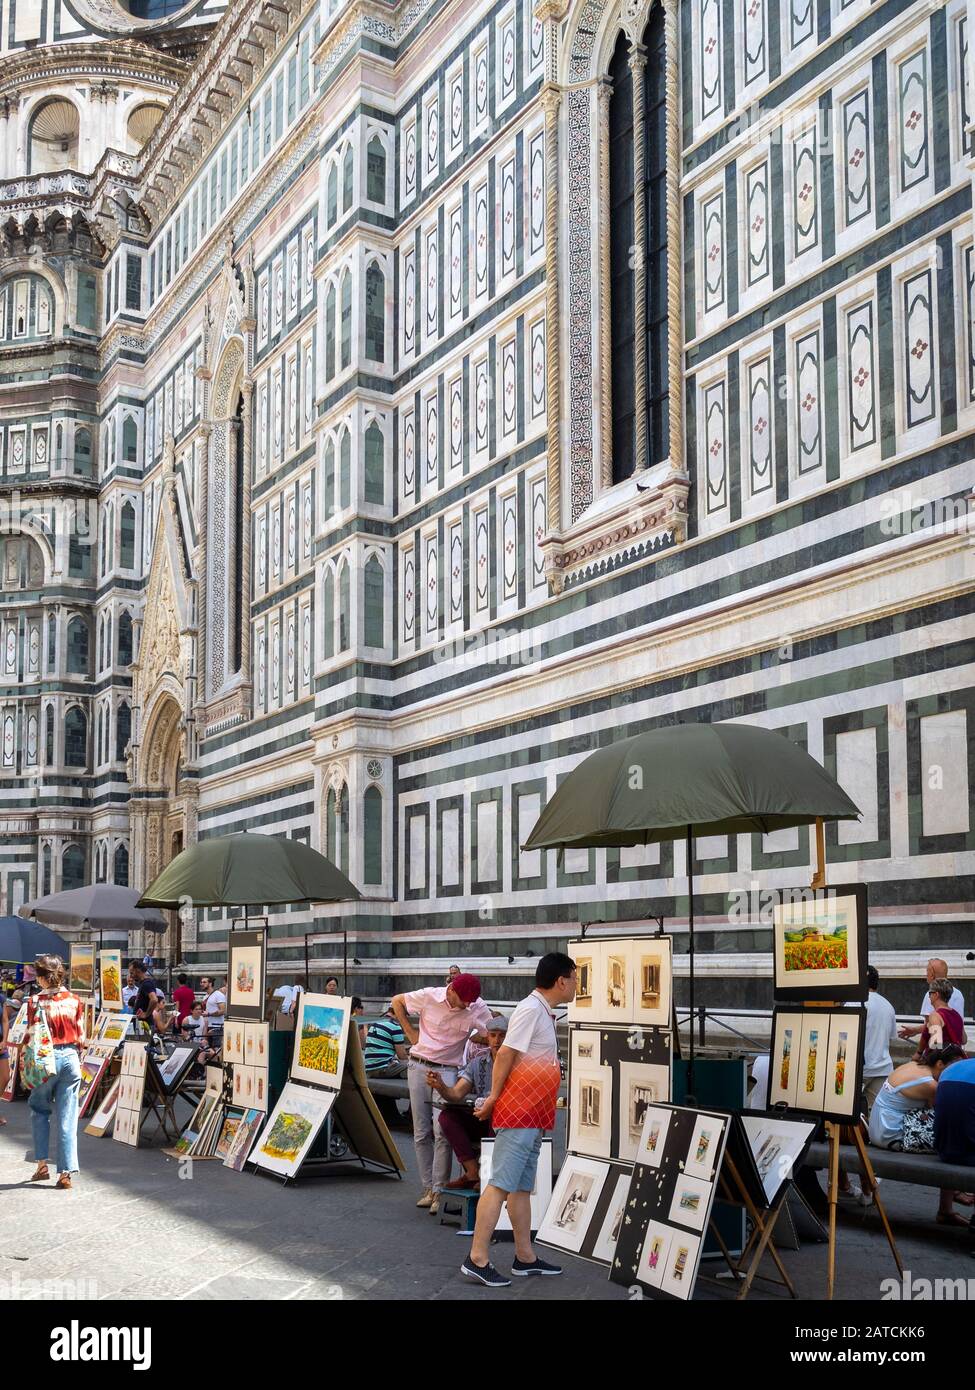 Artisti di strada disegnano ritratti turistici del Duomo di Firenze Foto Stock